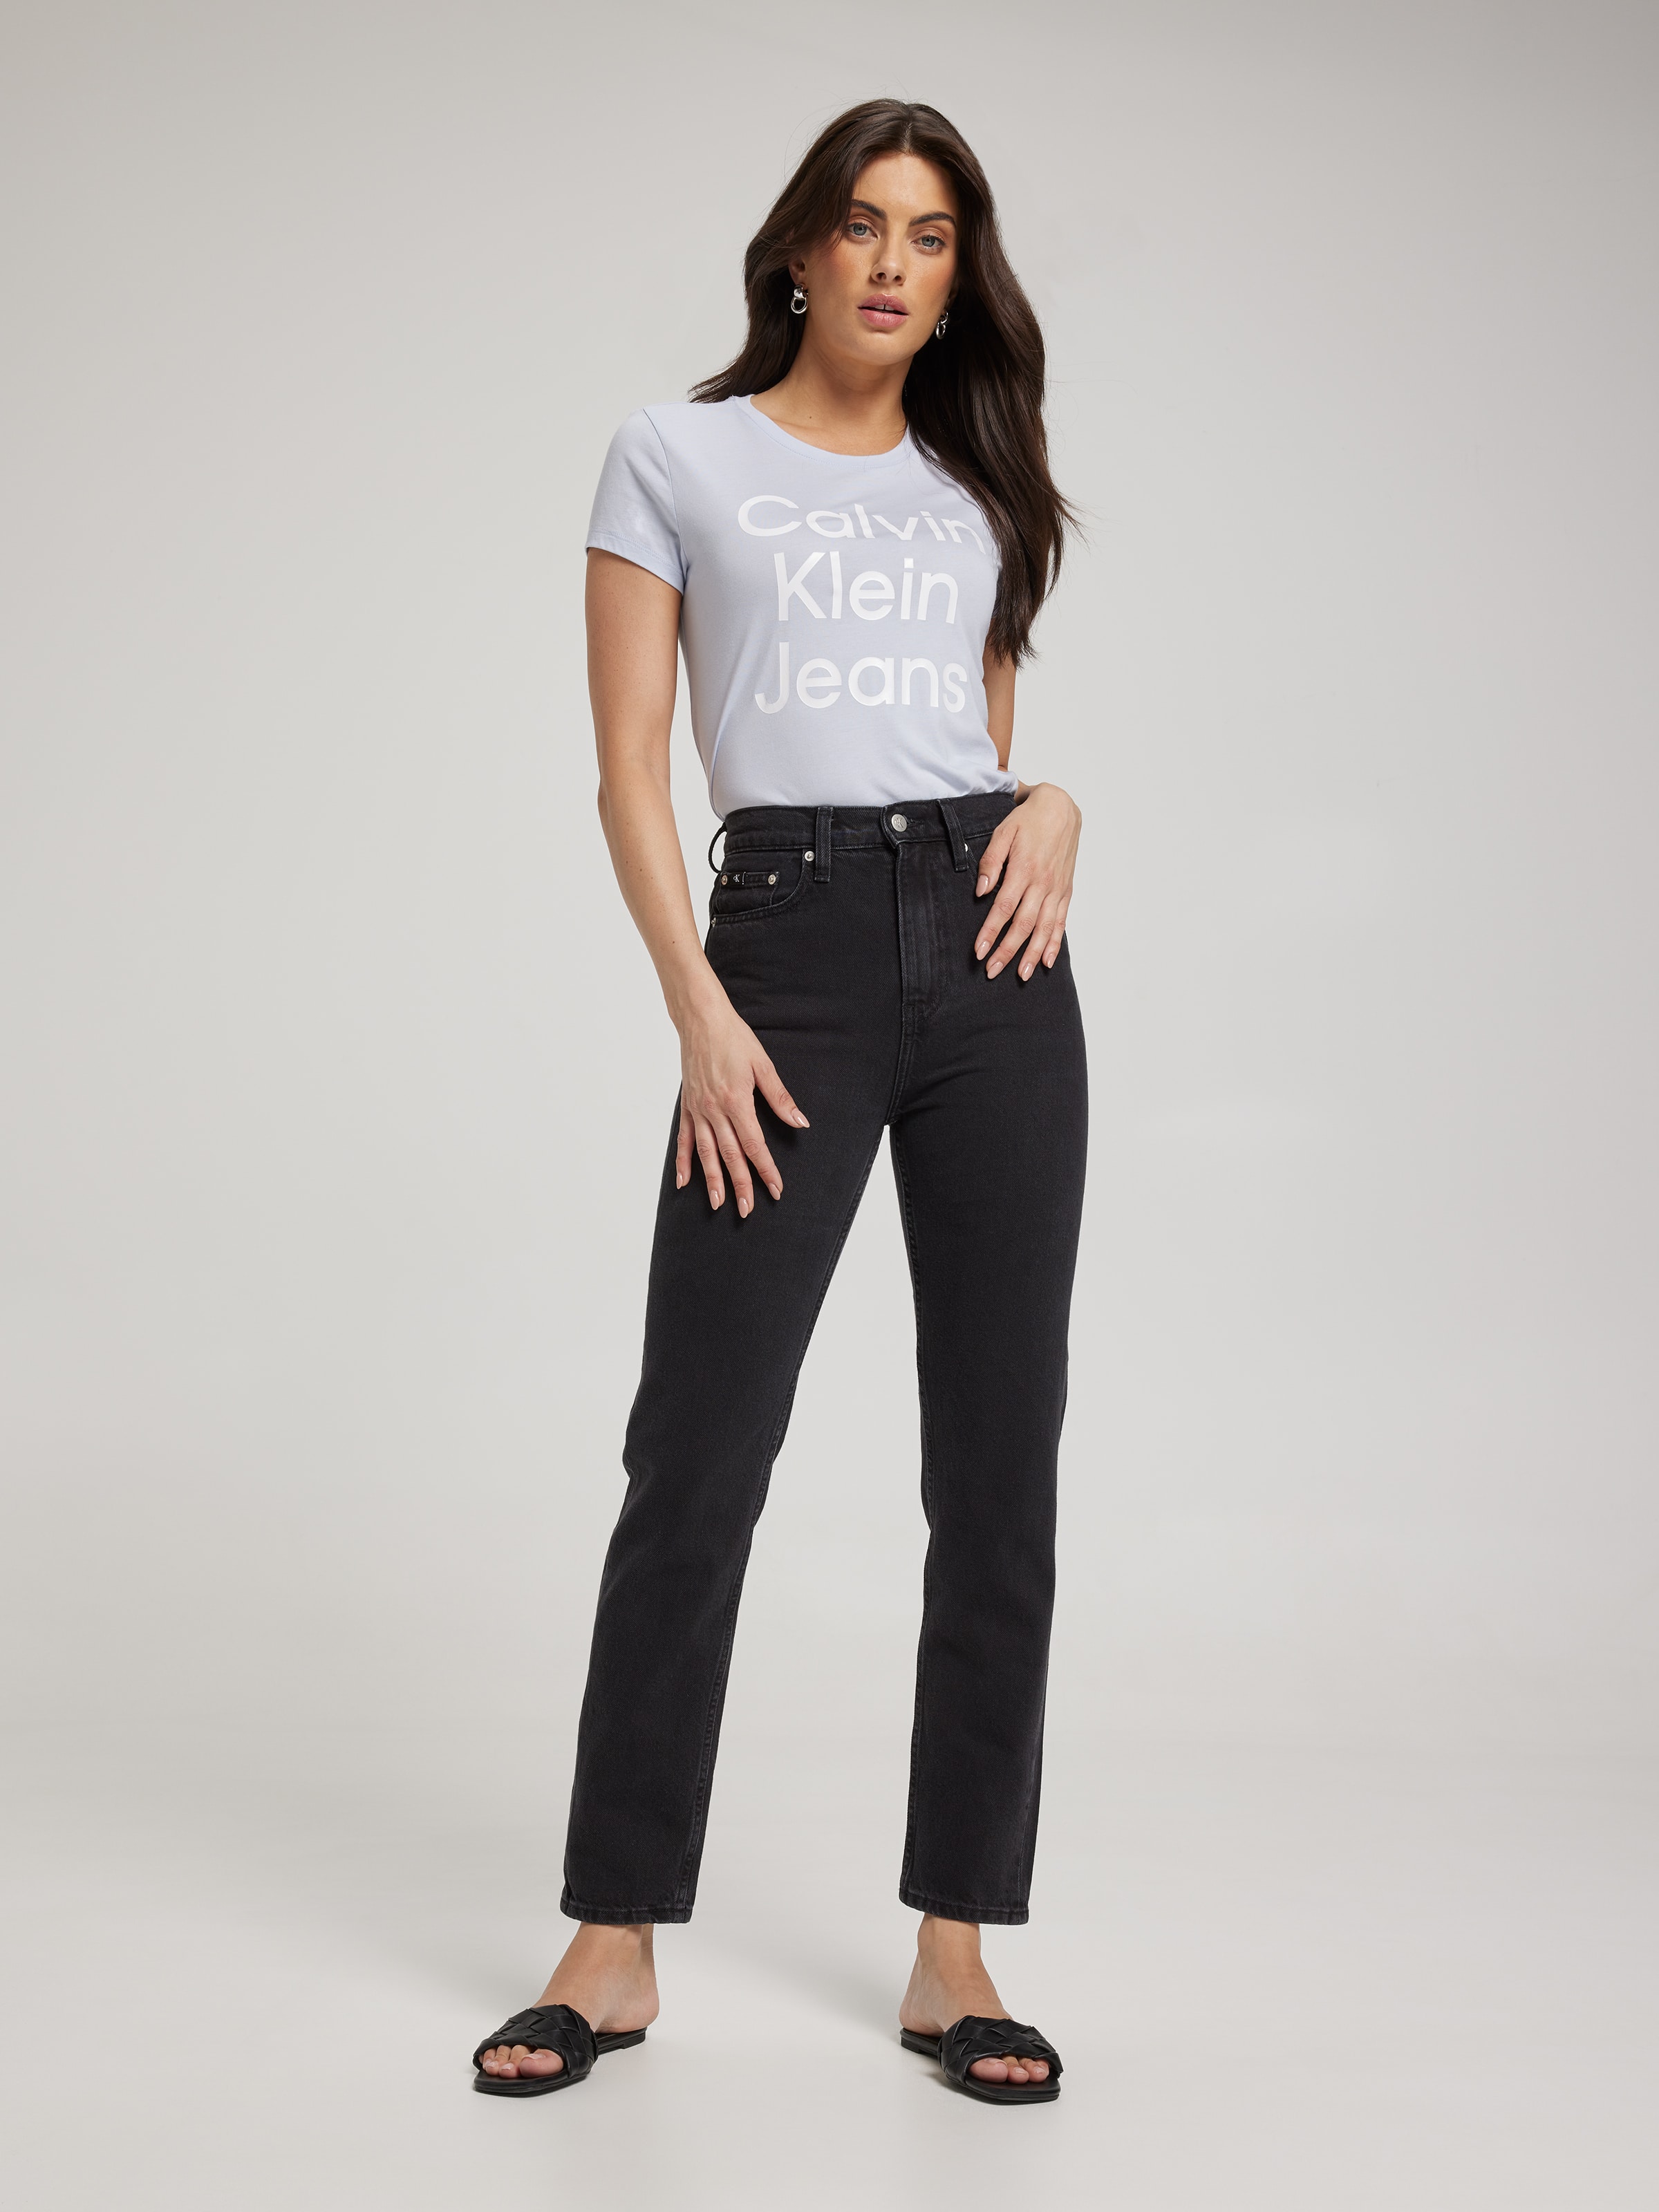 Women\'s Calvin Klein | Just Jeans